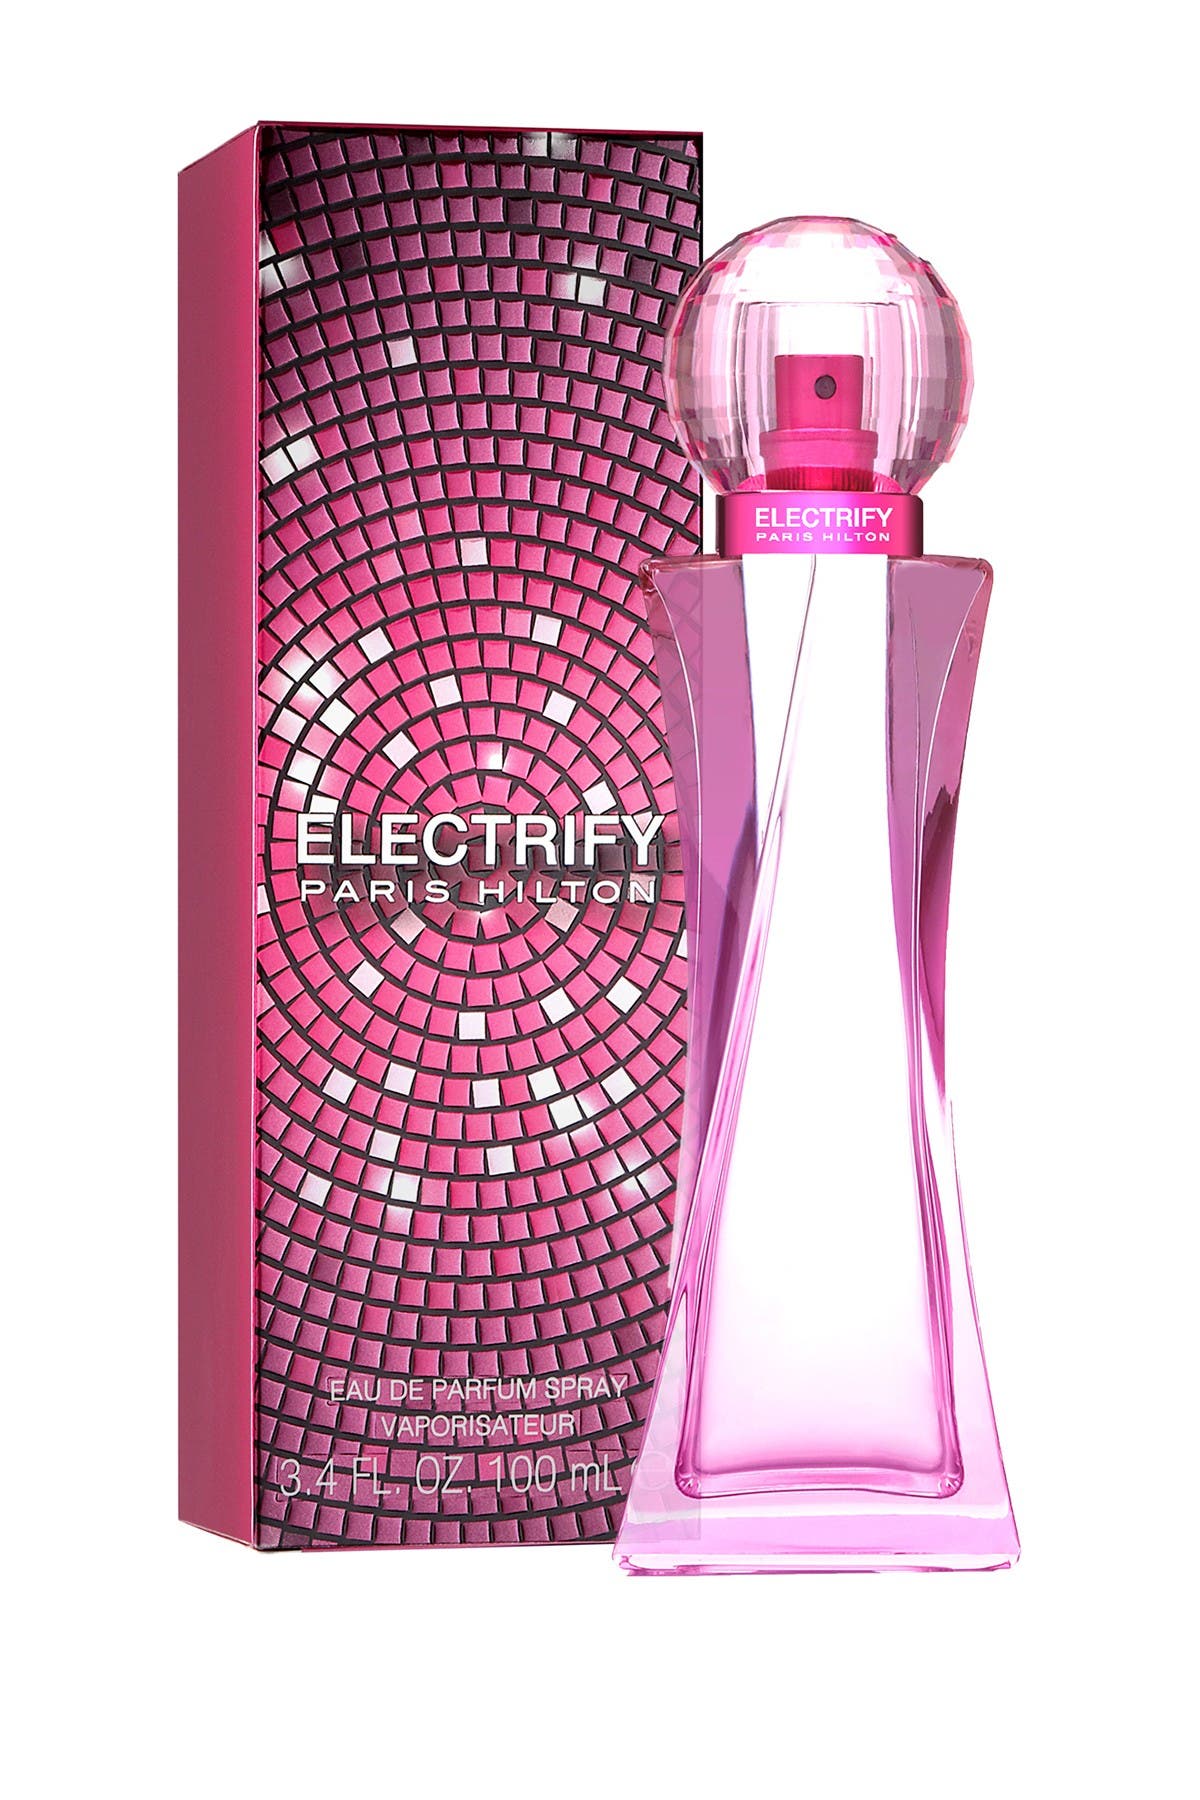 Electrify Eau de Parfum Spray - 3.4 fl. oz. Paris Hilton